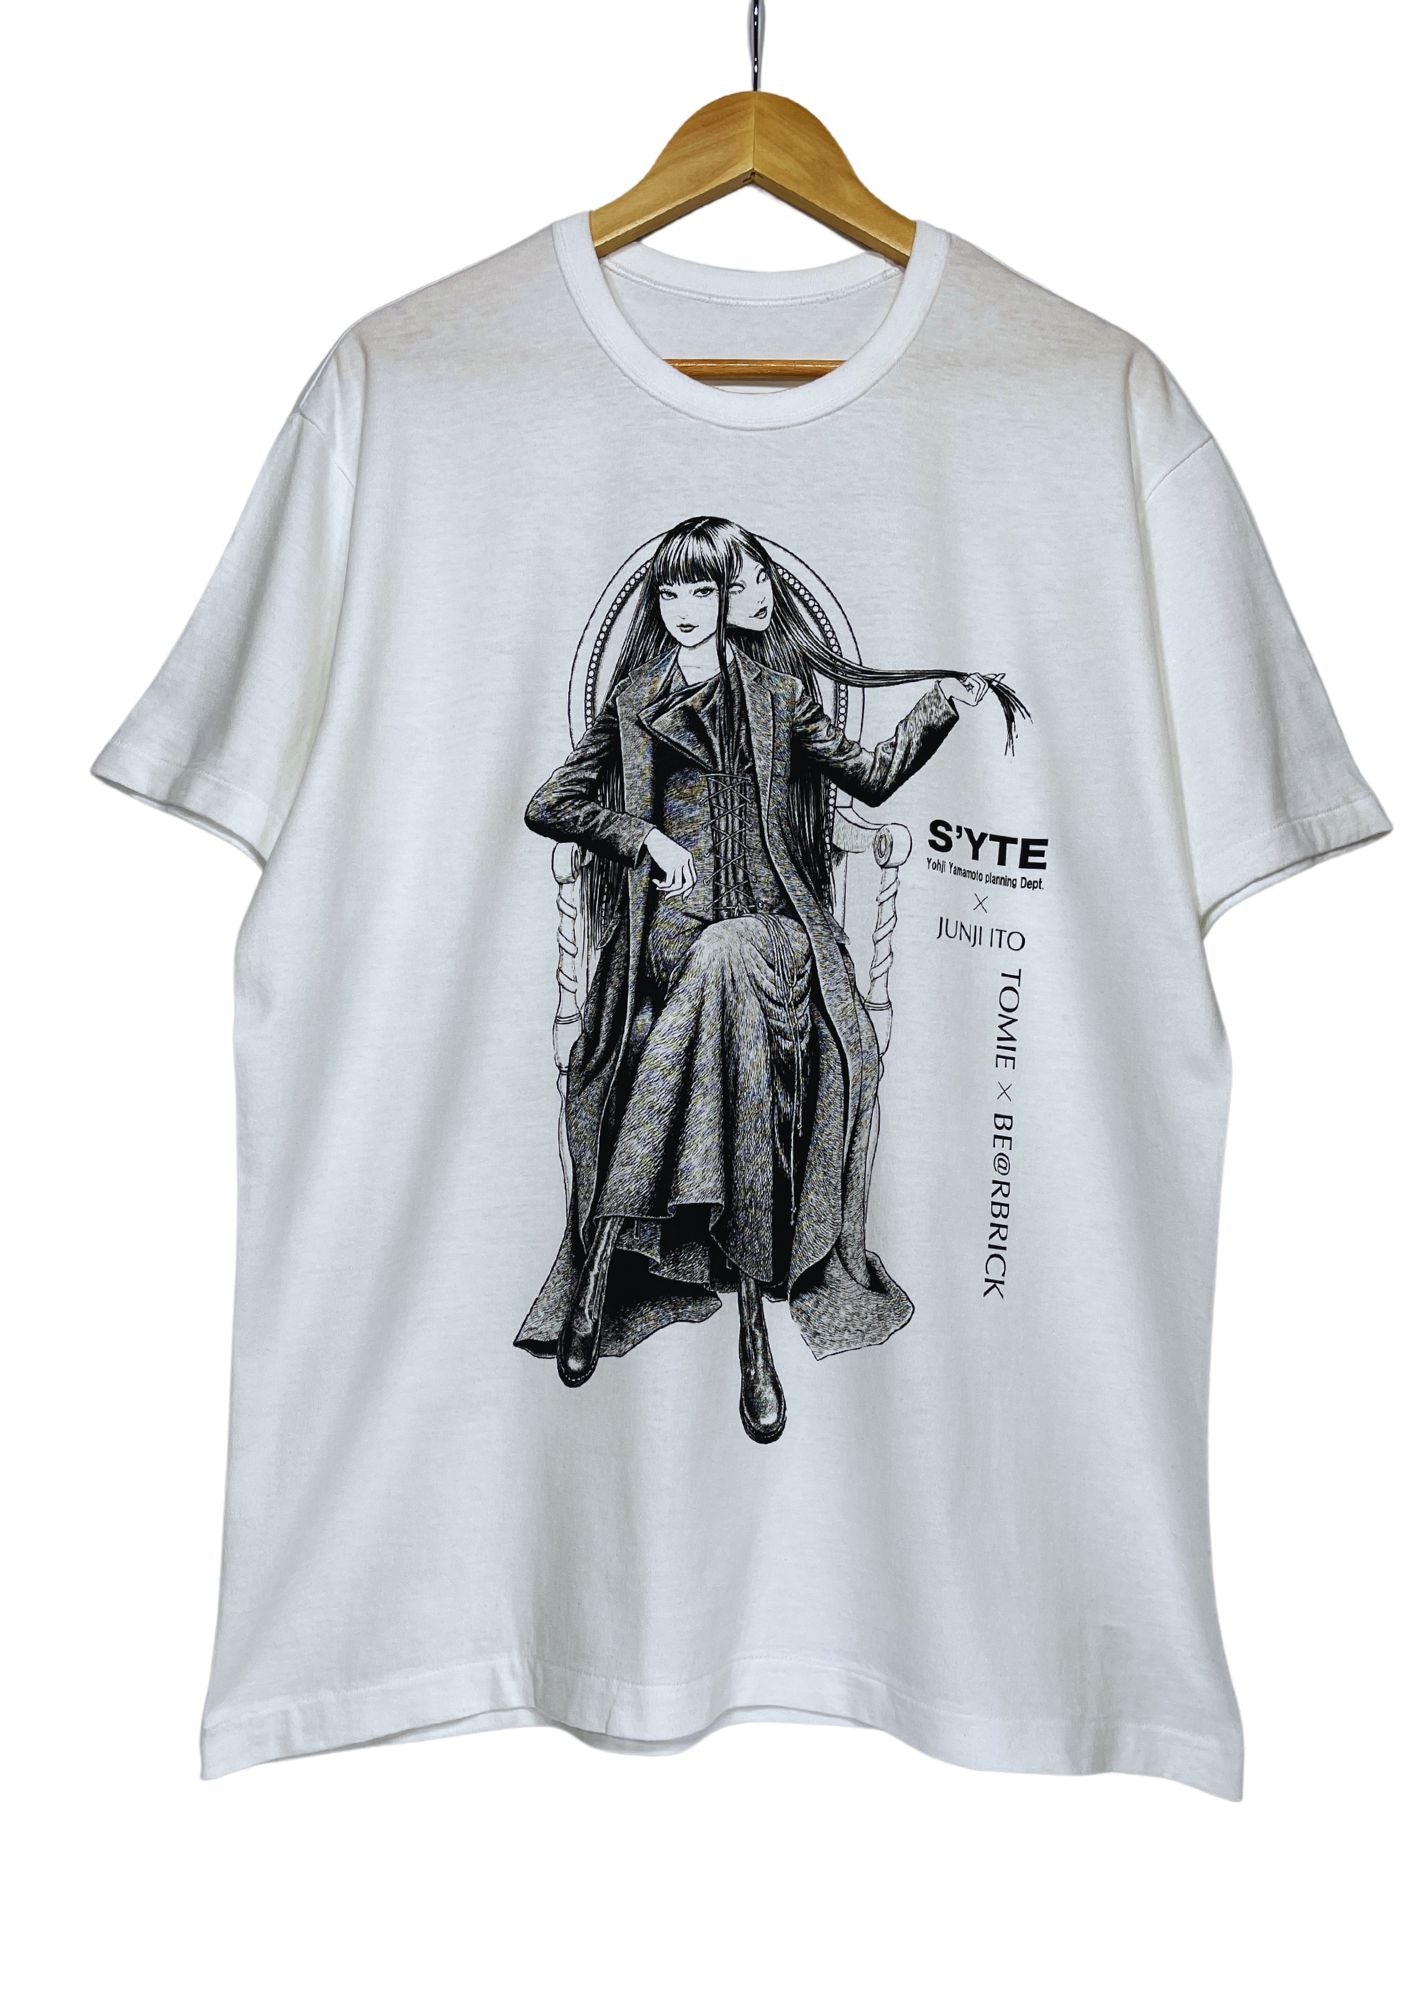 Junji Ito x S'YTE Yohji Yamamoto x Be@rbrick Tomie T-shirt